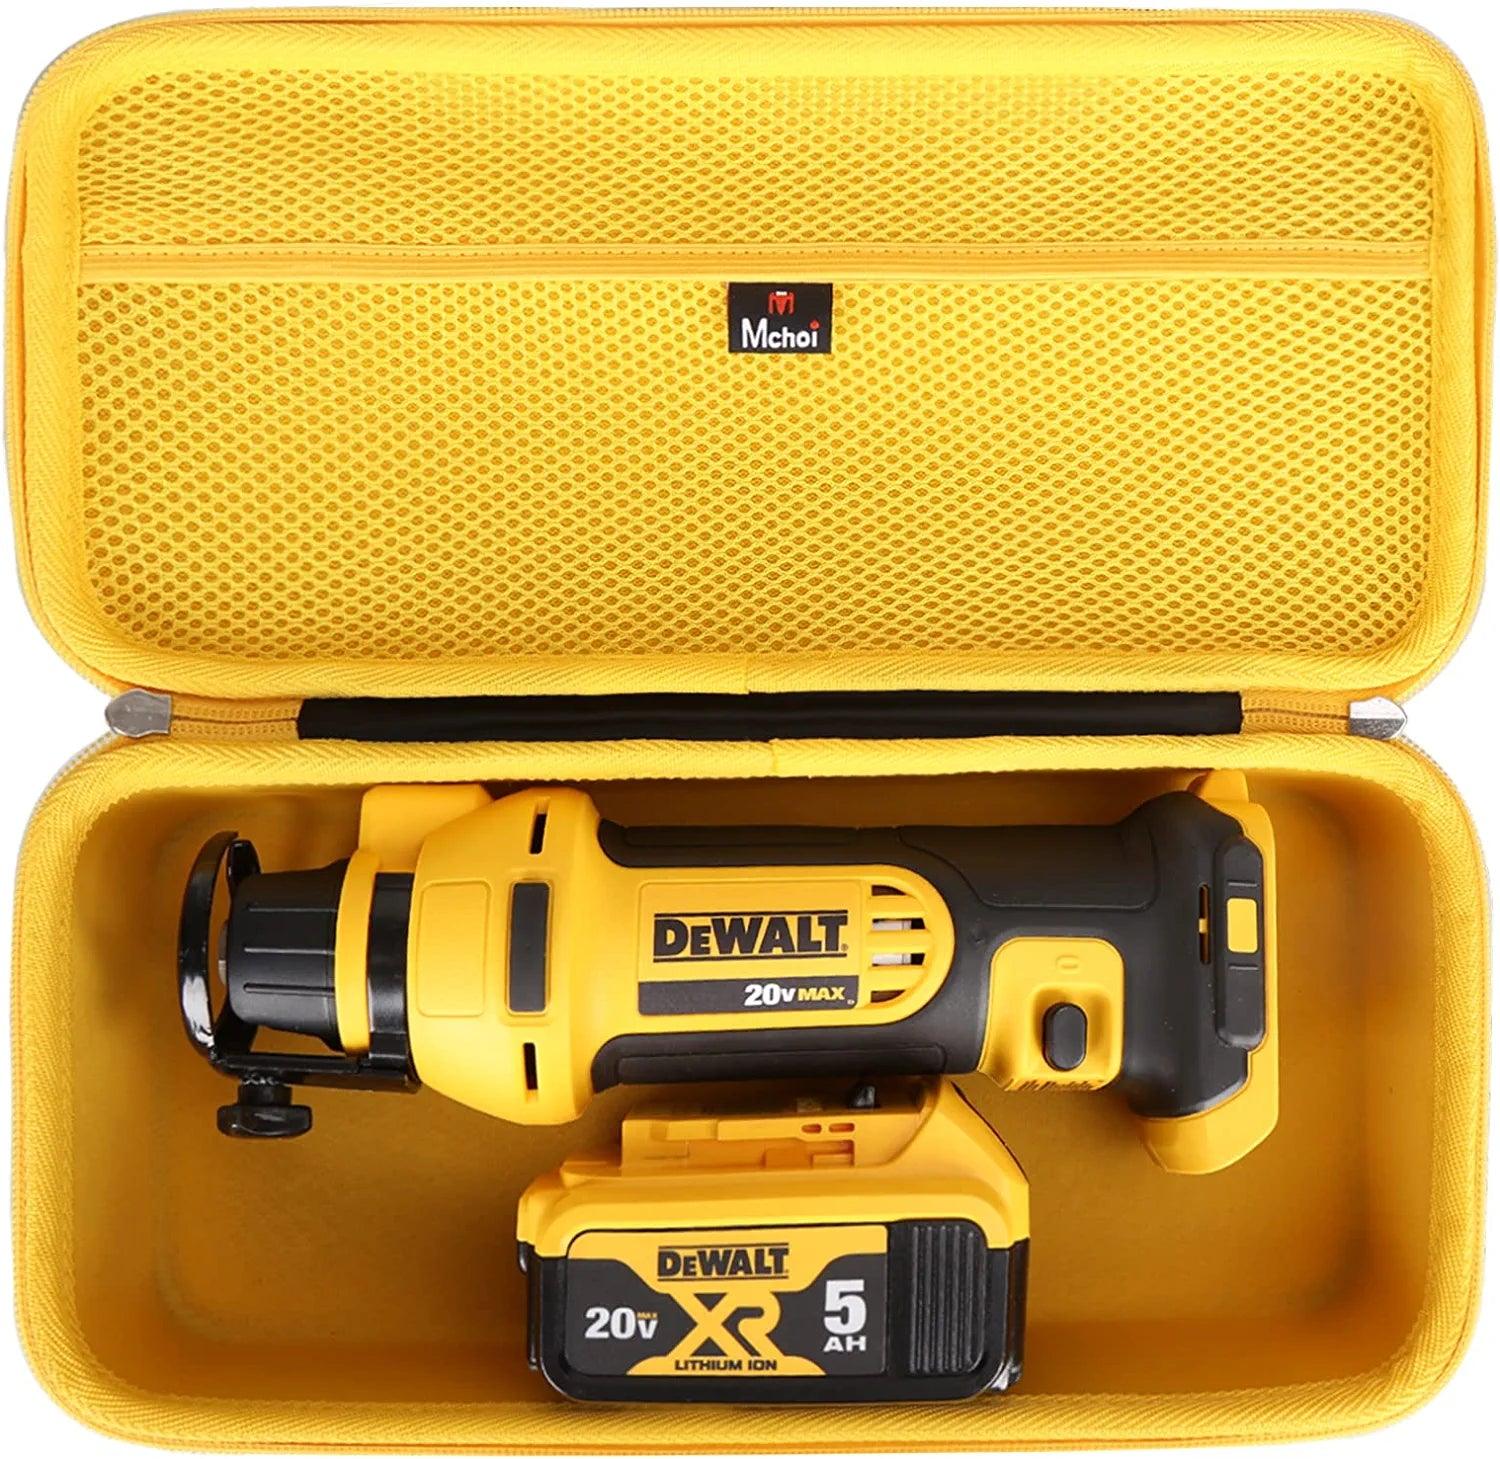 Hard Portable Case Fits for DEWALT DCS551B 20V MAX* Drywall Cutting Tool